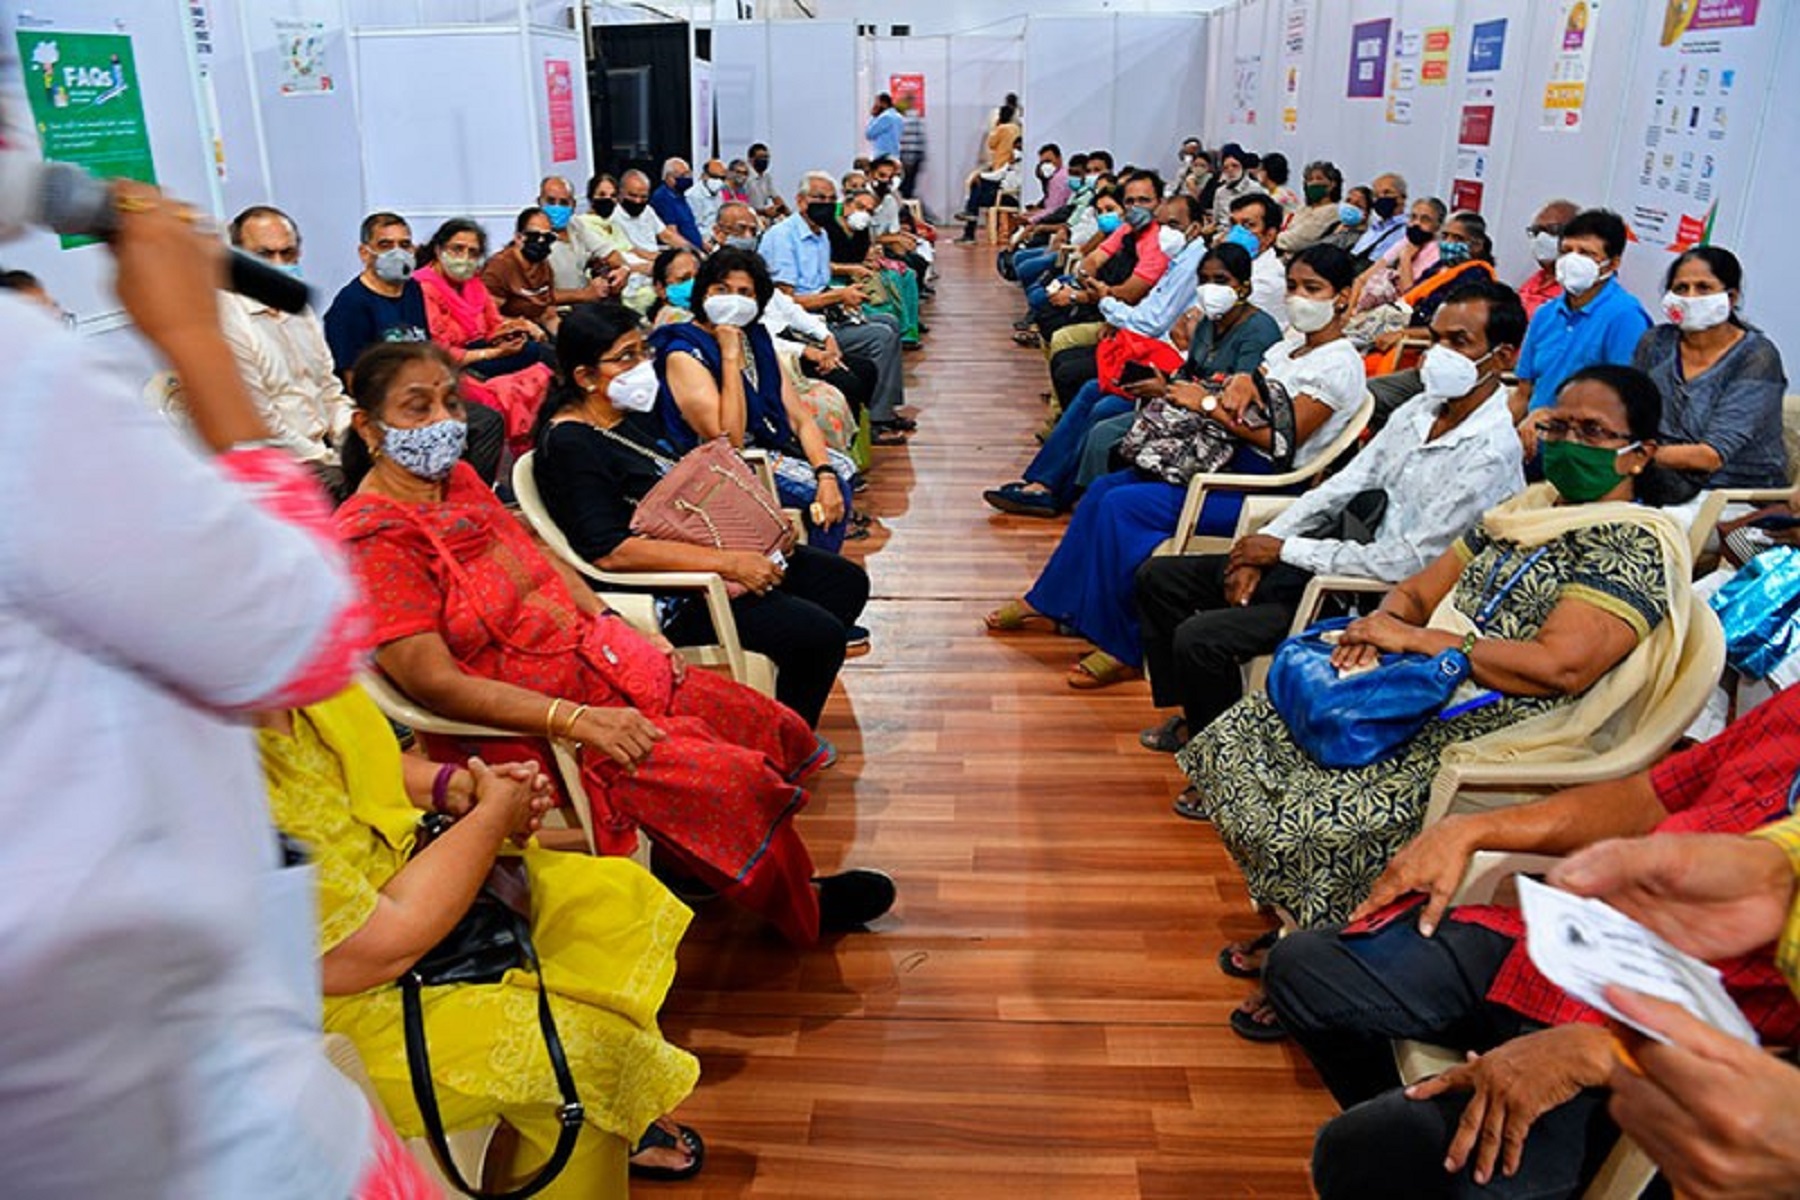 Κορωνοϊός Ινδία: Εμβολιάζει 10 εκατομμύρια άτομα σε μία ημέρα